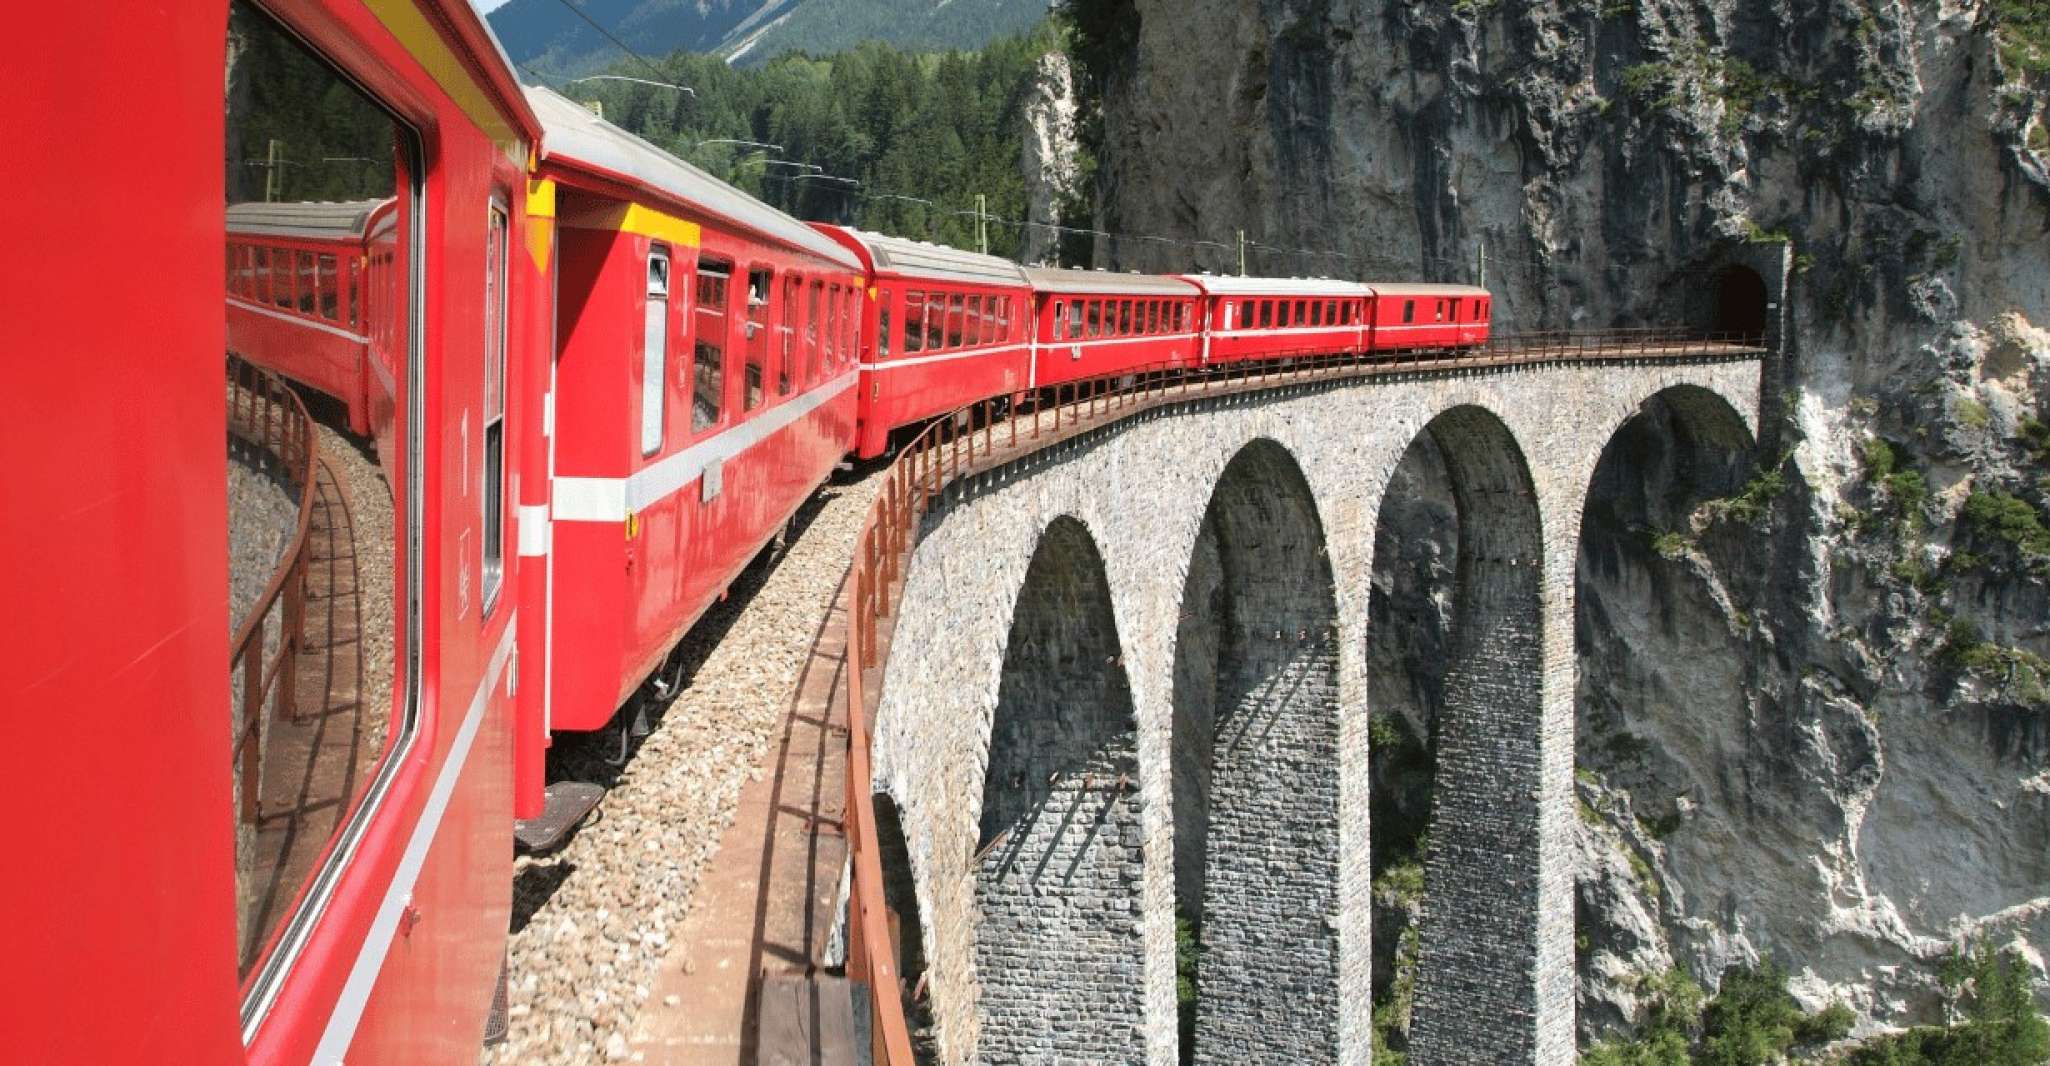 From Lecco railway station, Bernina train ticket - Housity